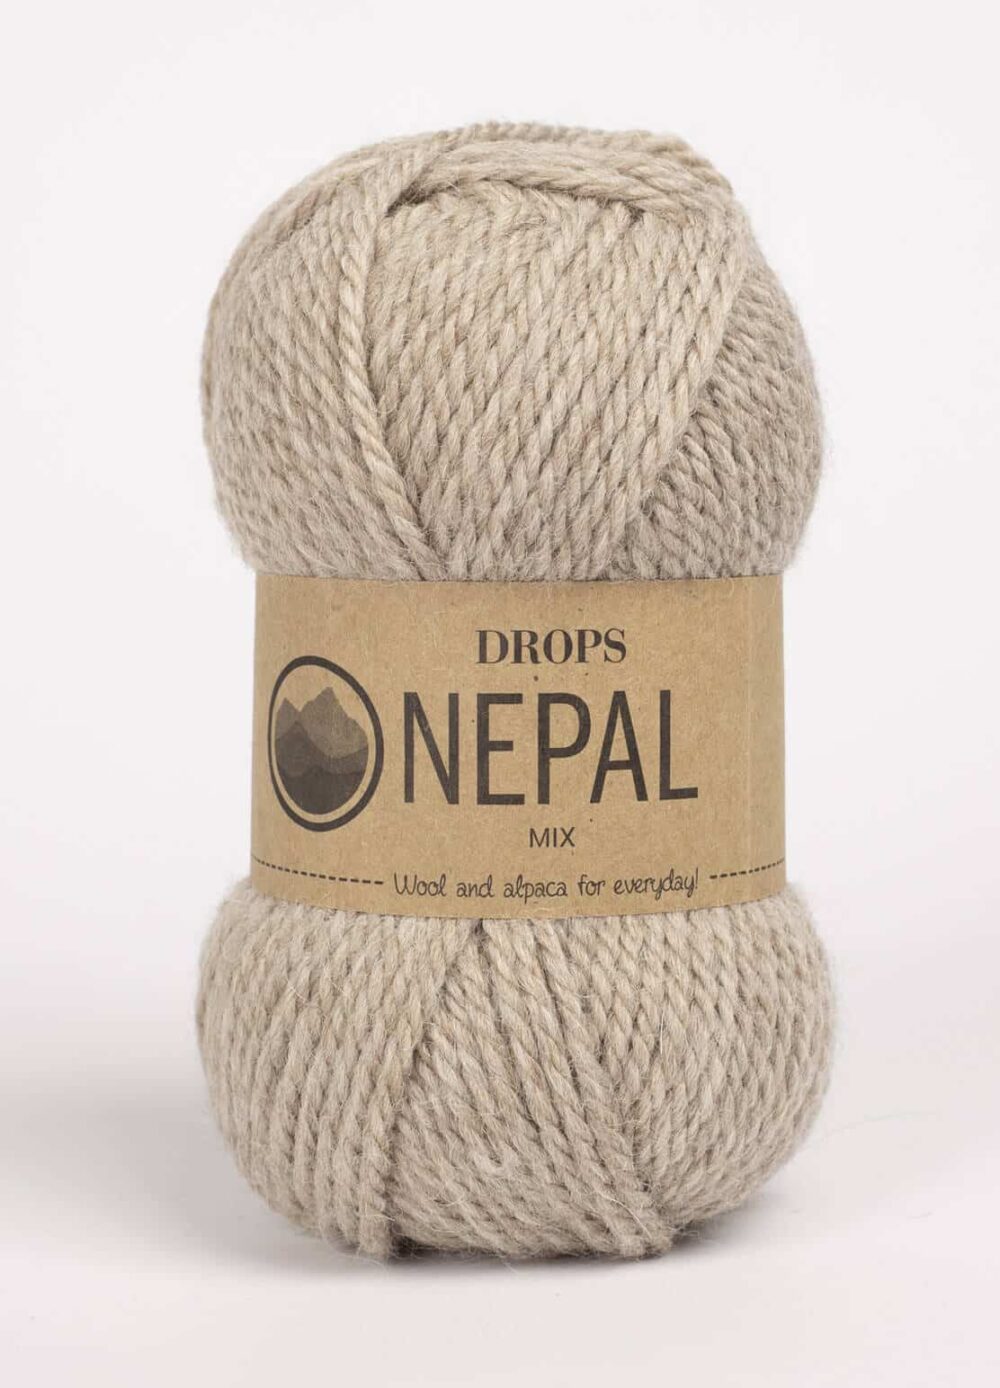 Drops Nepal - alpakos vilna - avies vilna - mezgimo - stori -velimo -ekologiski - siulai - pledukui - vaikams - vyrams -moterims - zieminiai - silti -siulu dama